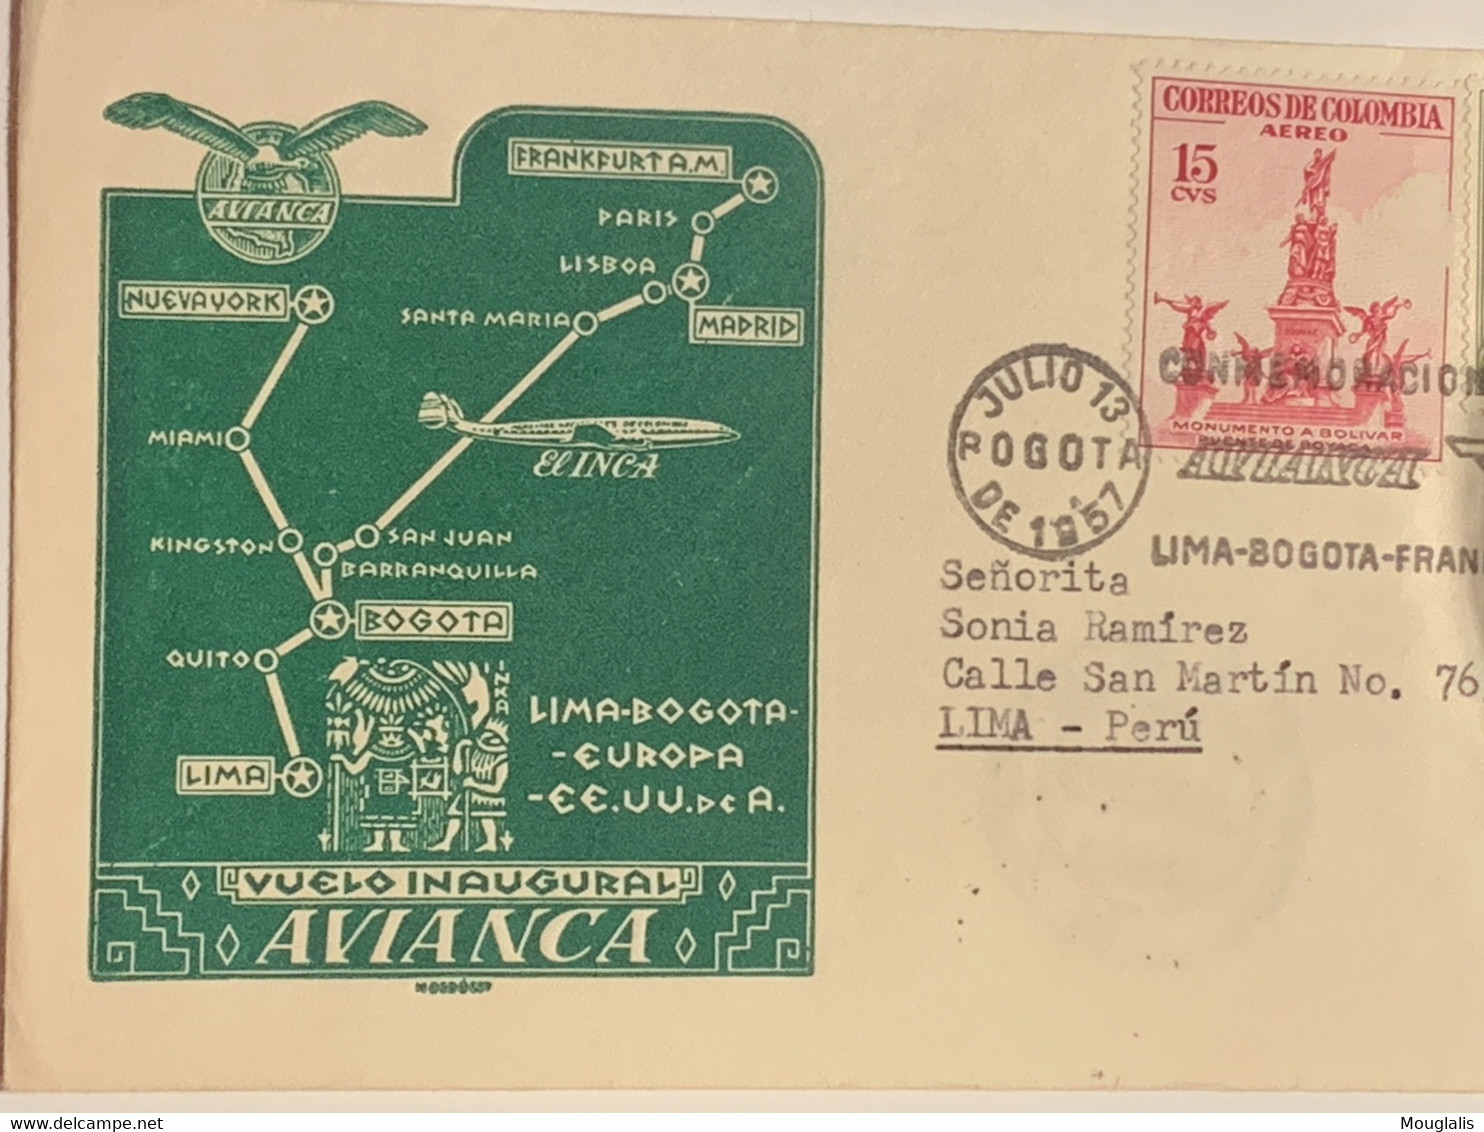 Enveloppe Premier Vol  AVIANCA Lima-Bogota-Frankfurt- New York 13 Juillet 1957 Poste Aérienne Premier Vol Pour Lima - World